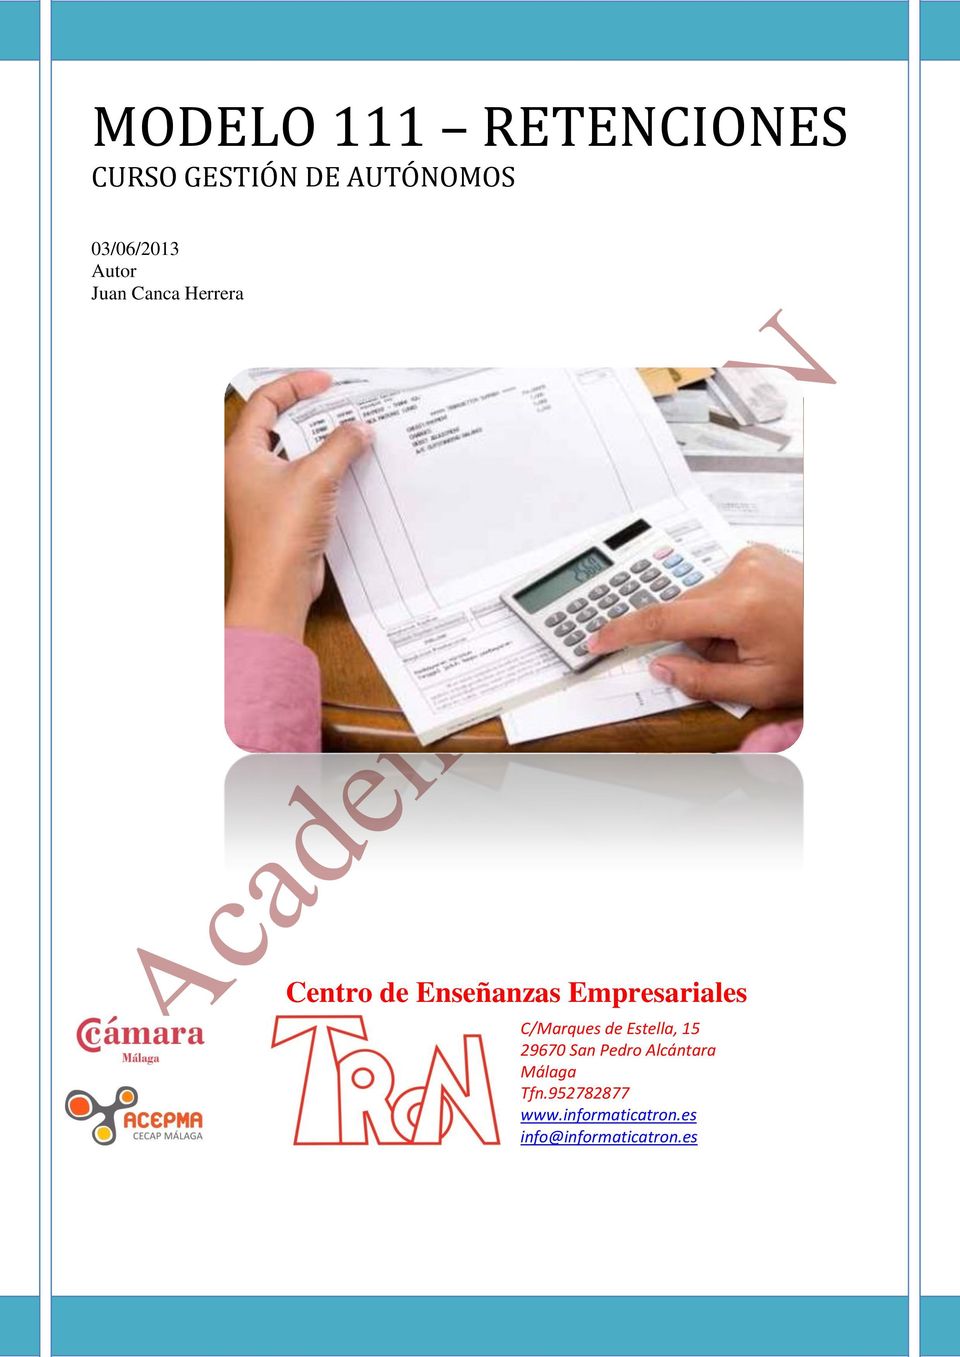 Empresariales C/Marques de Estella, 15 29670 San Pedro